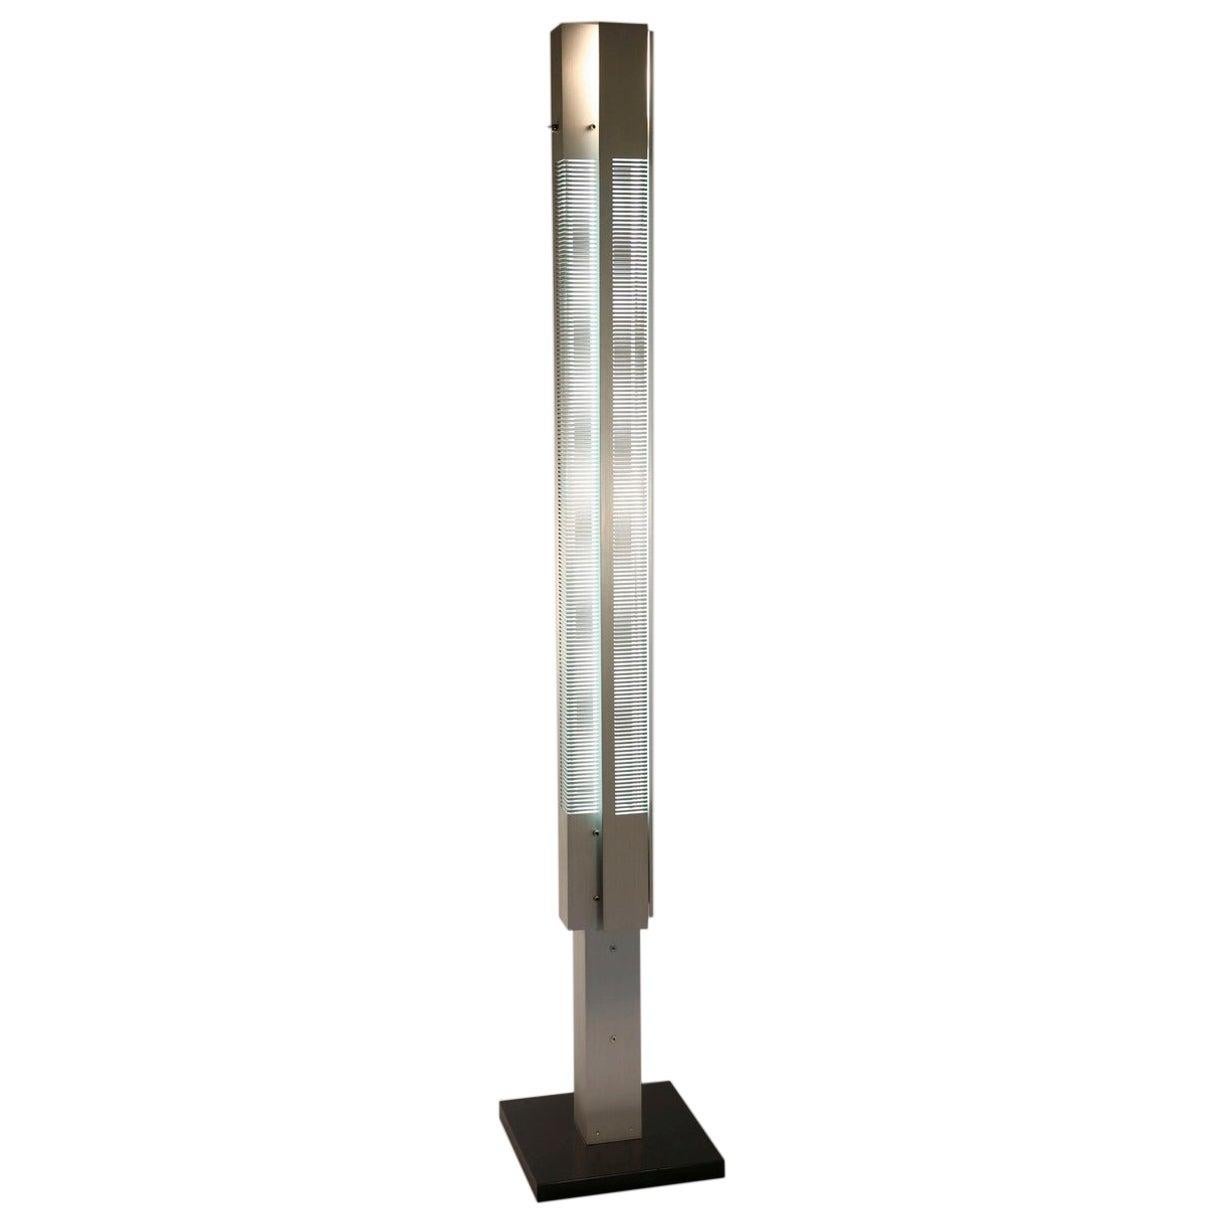 Serge Mouille Mid-Century Modern Aluminium Medium Signal Column Floor Lamp For Sale